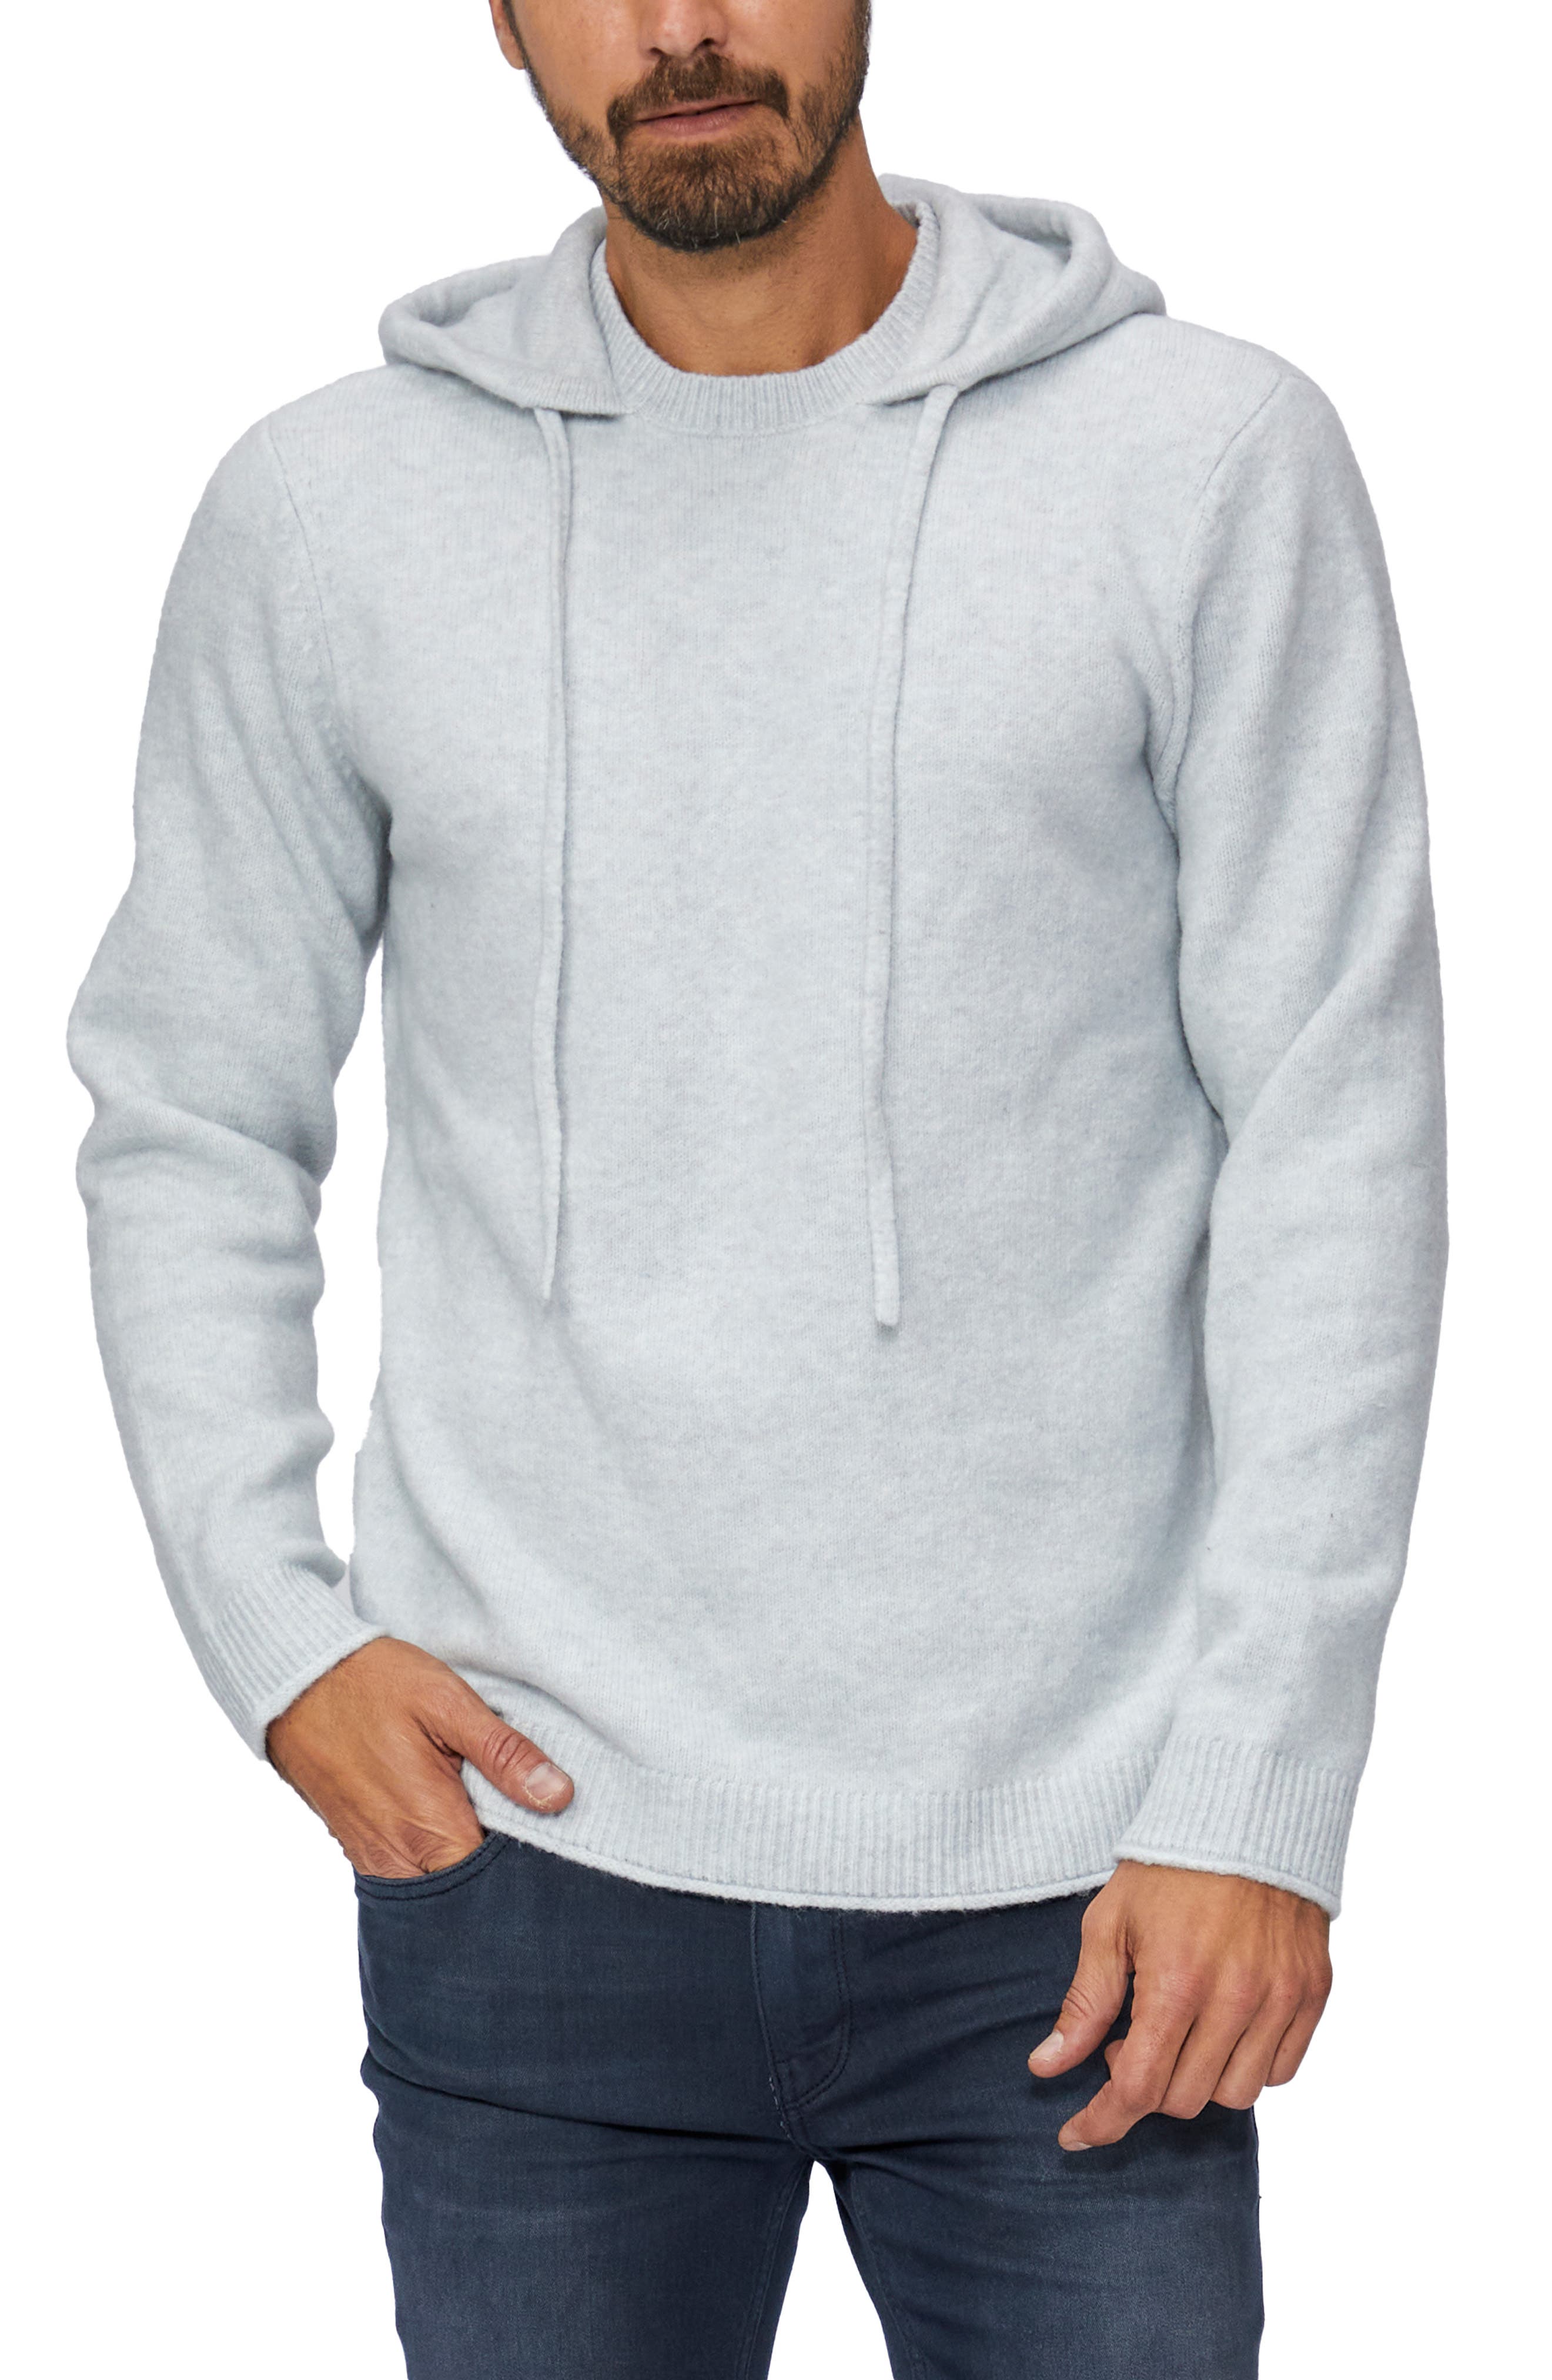 BrandMens Hoodies Sweatshirts Short Sleeve Men Hoodies Sweatshirt Casual Solid Color Man hoody For Male Hooded（#white） 